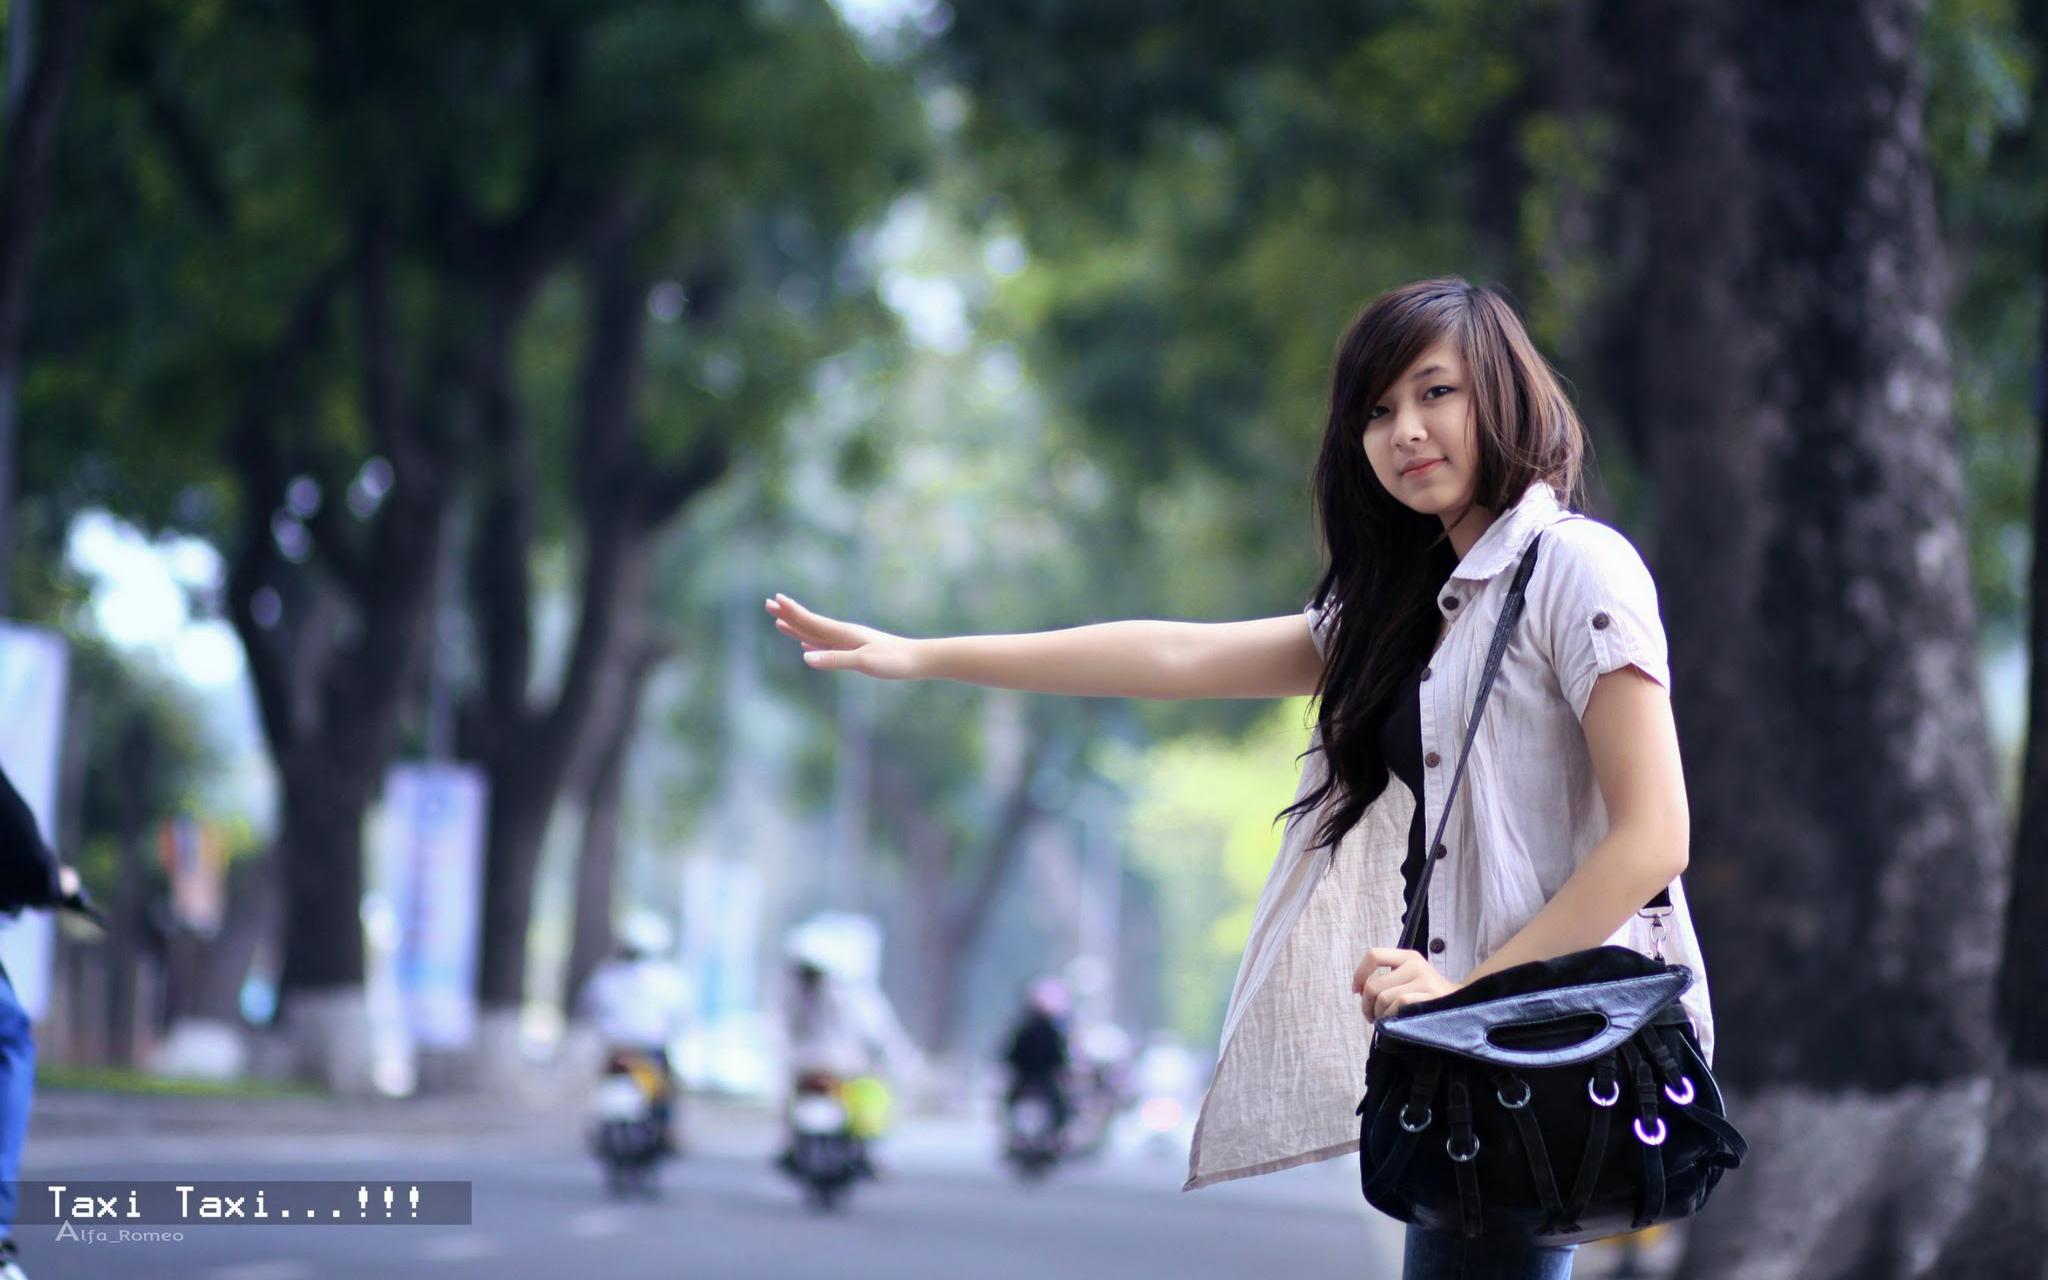 Hot Cute Asian Girl Wallpaper Full HD Free Download